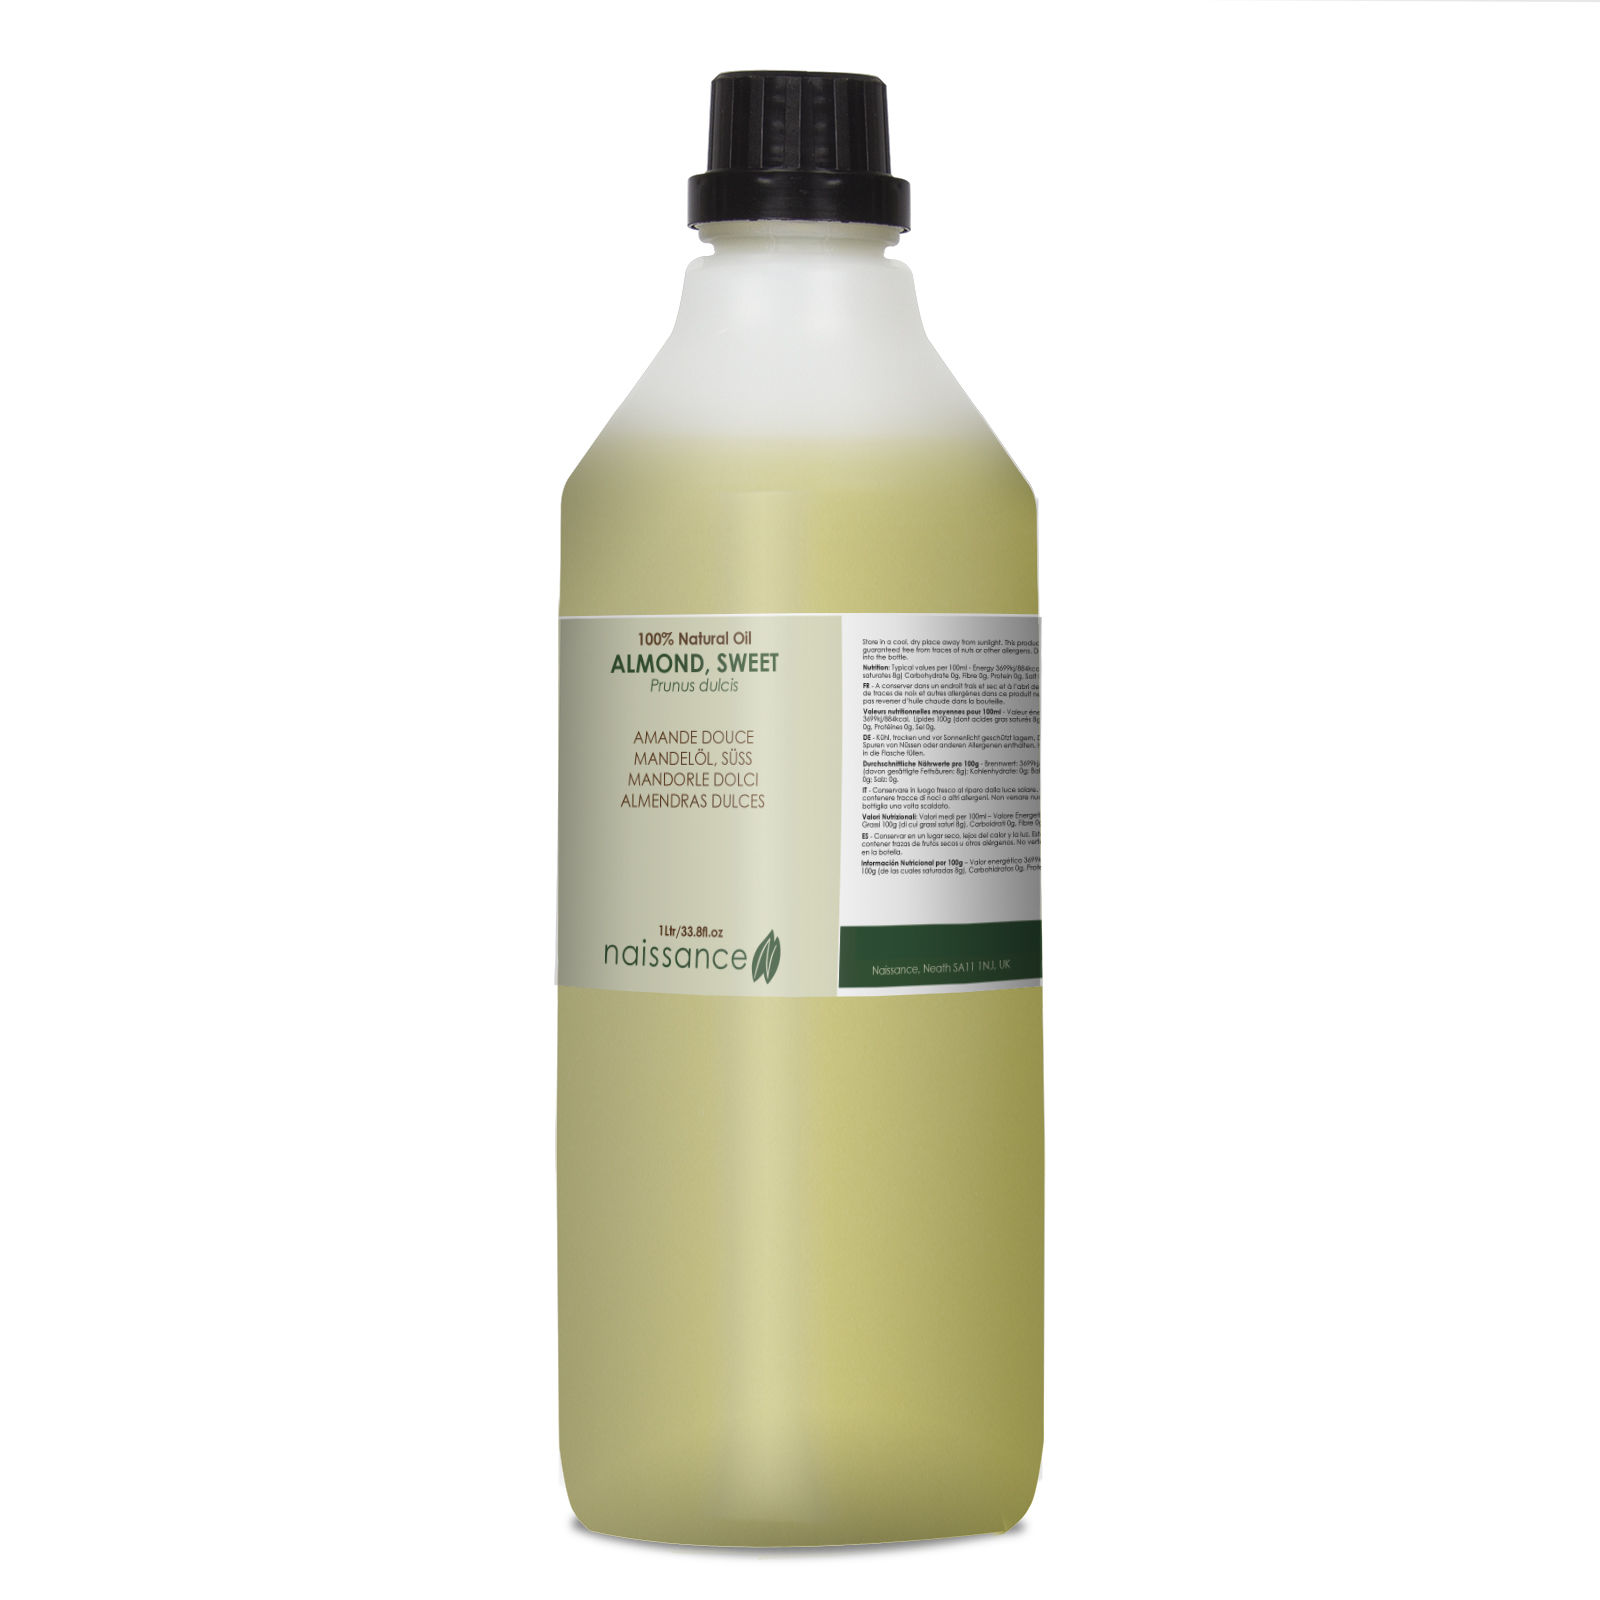 Naissance Mandelöl - 1 Liter ( 1000ml ) - 100% rein